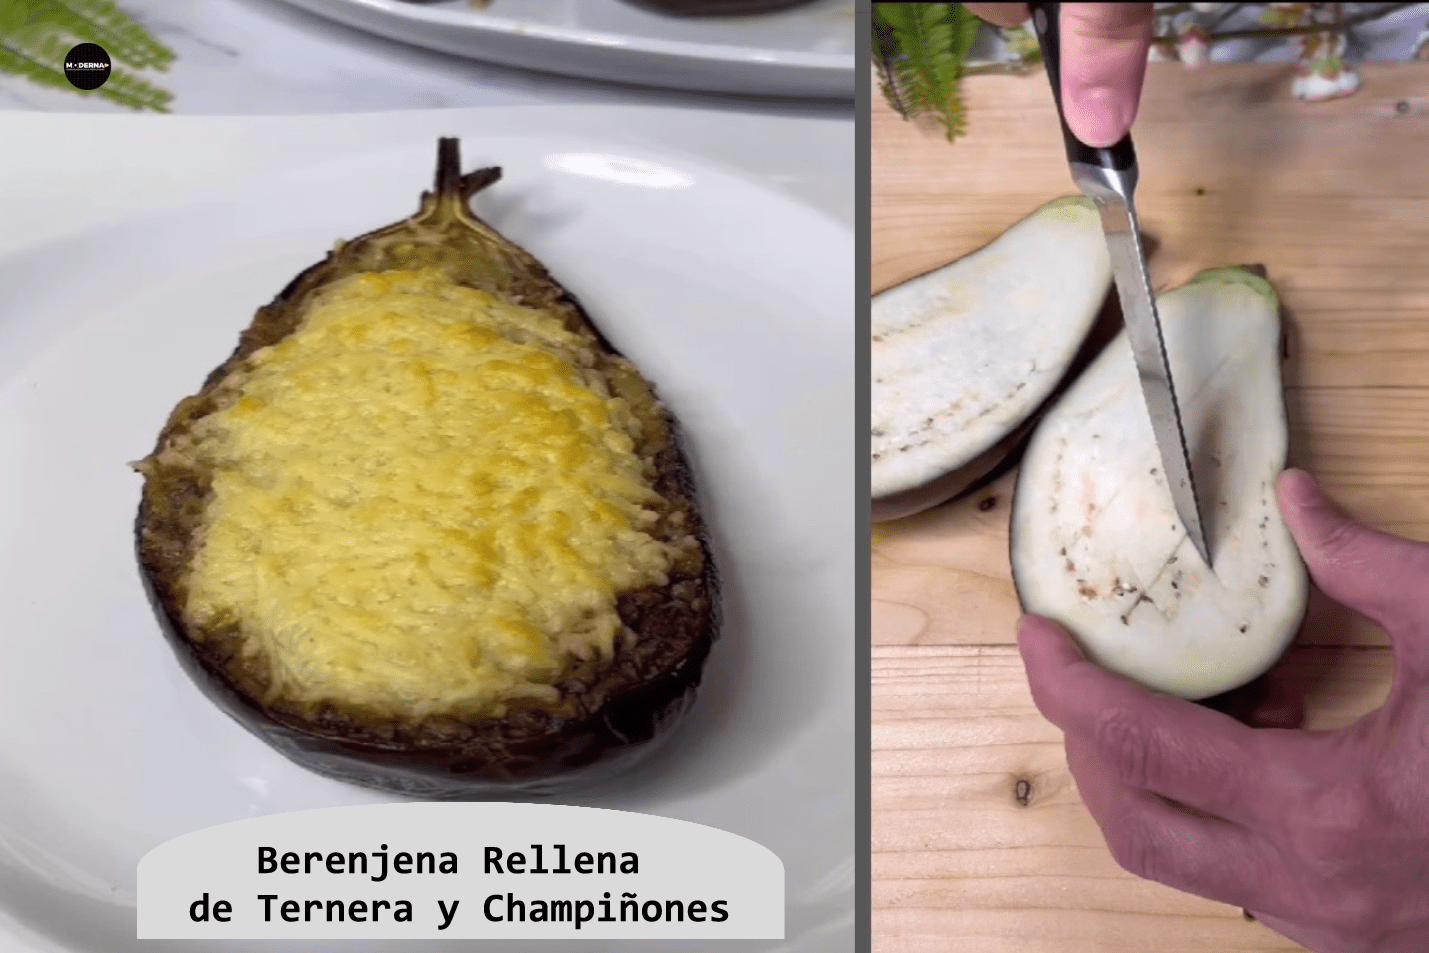 Cocina con Noelia Berenejena Rellena de Ternera y Champinones